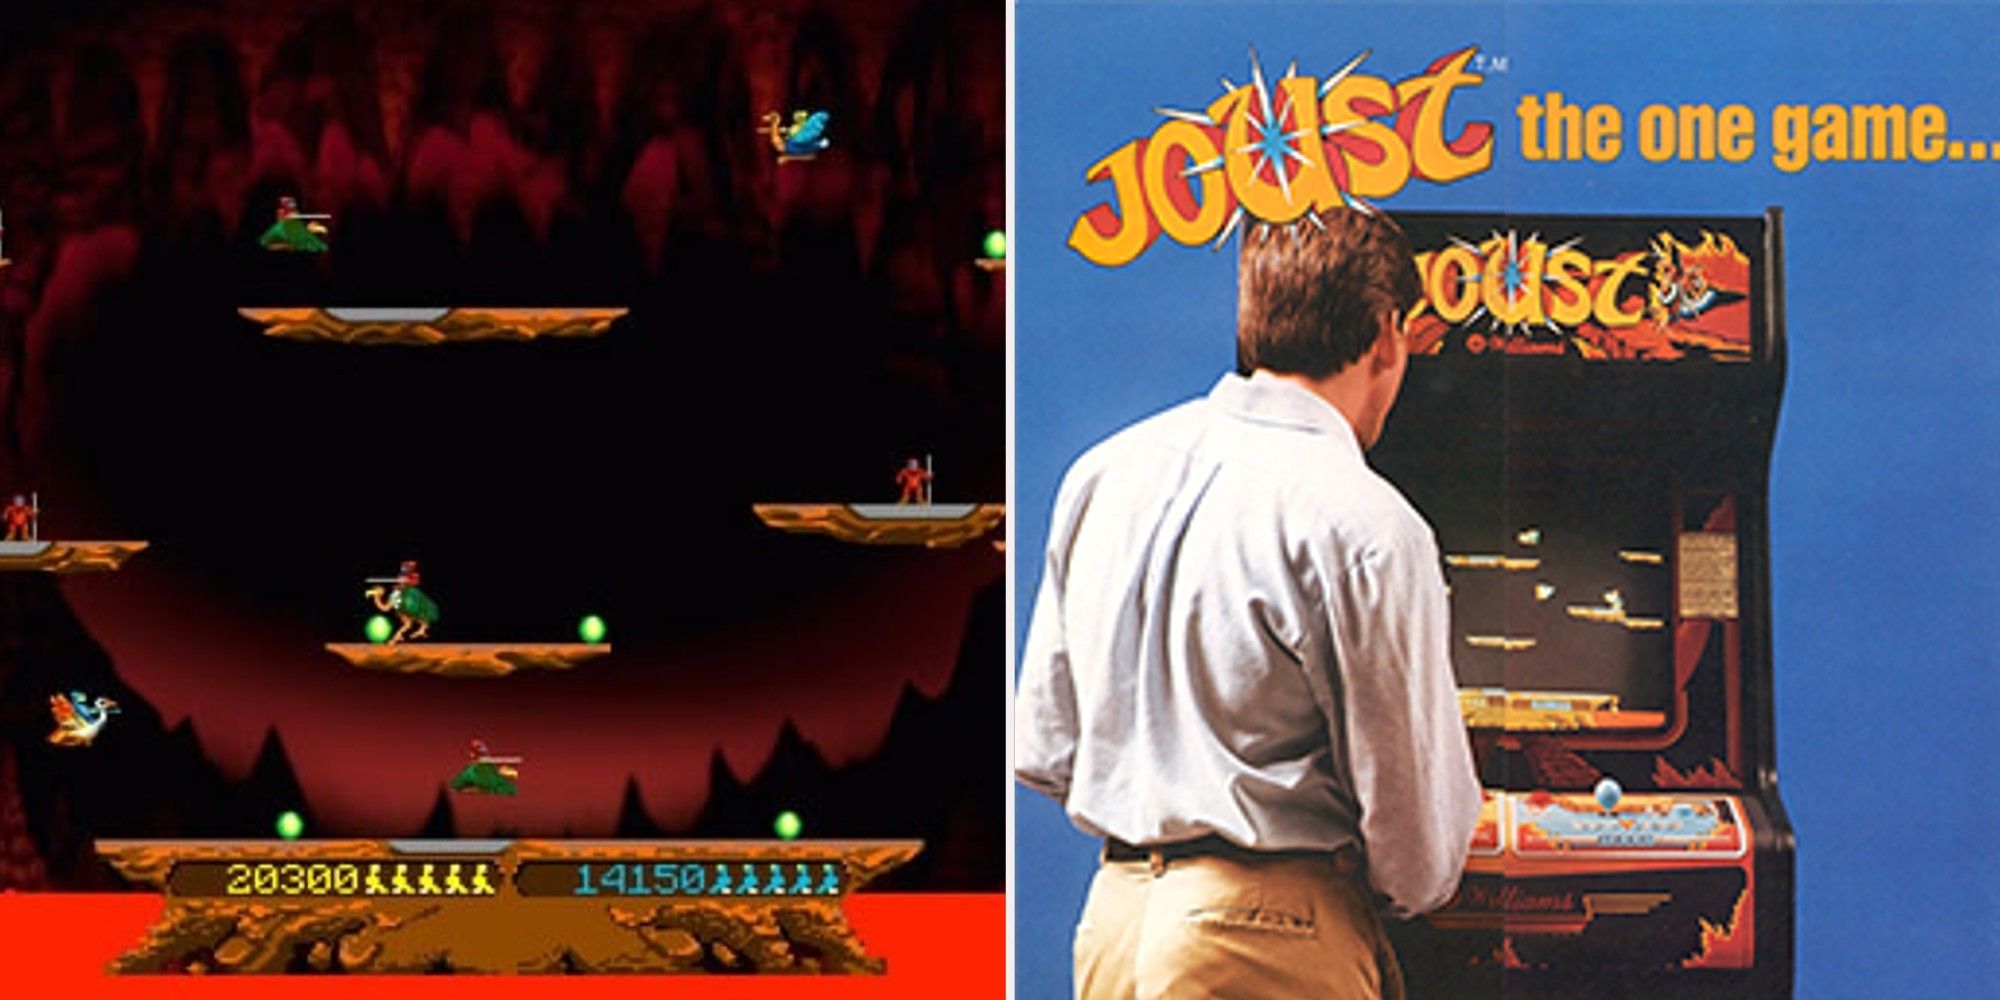 Joust - gameplay and arcade machine